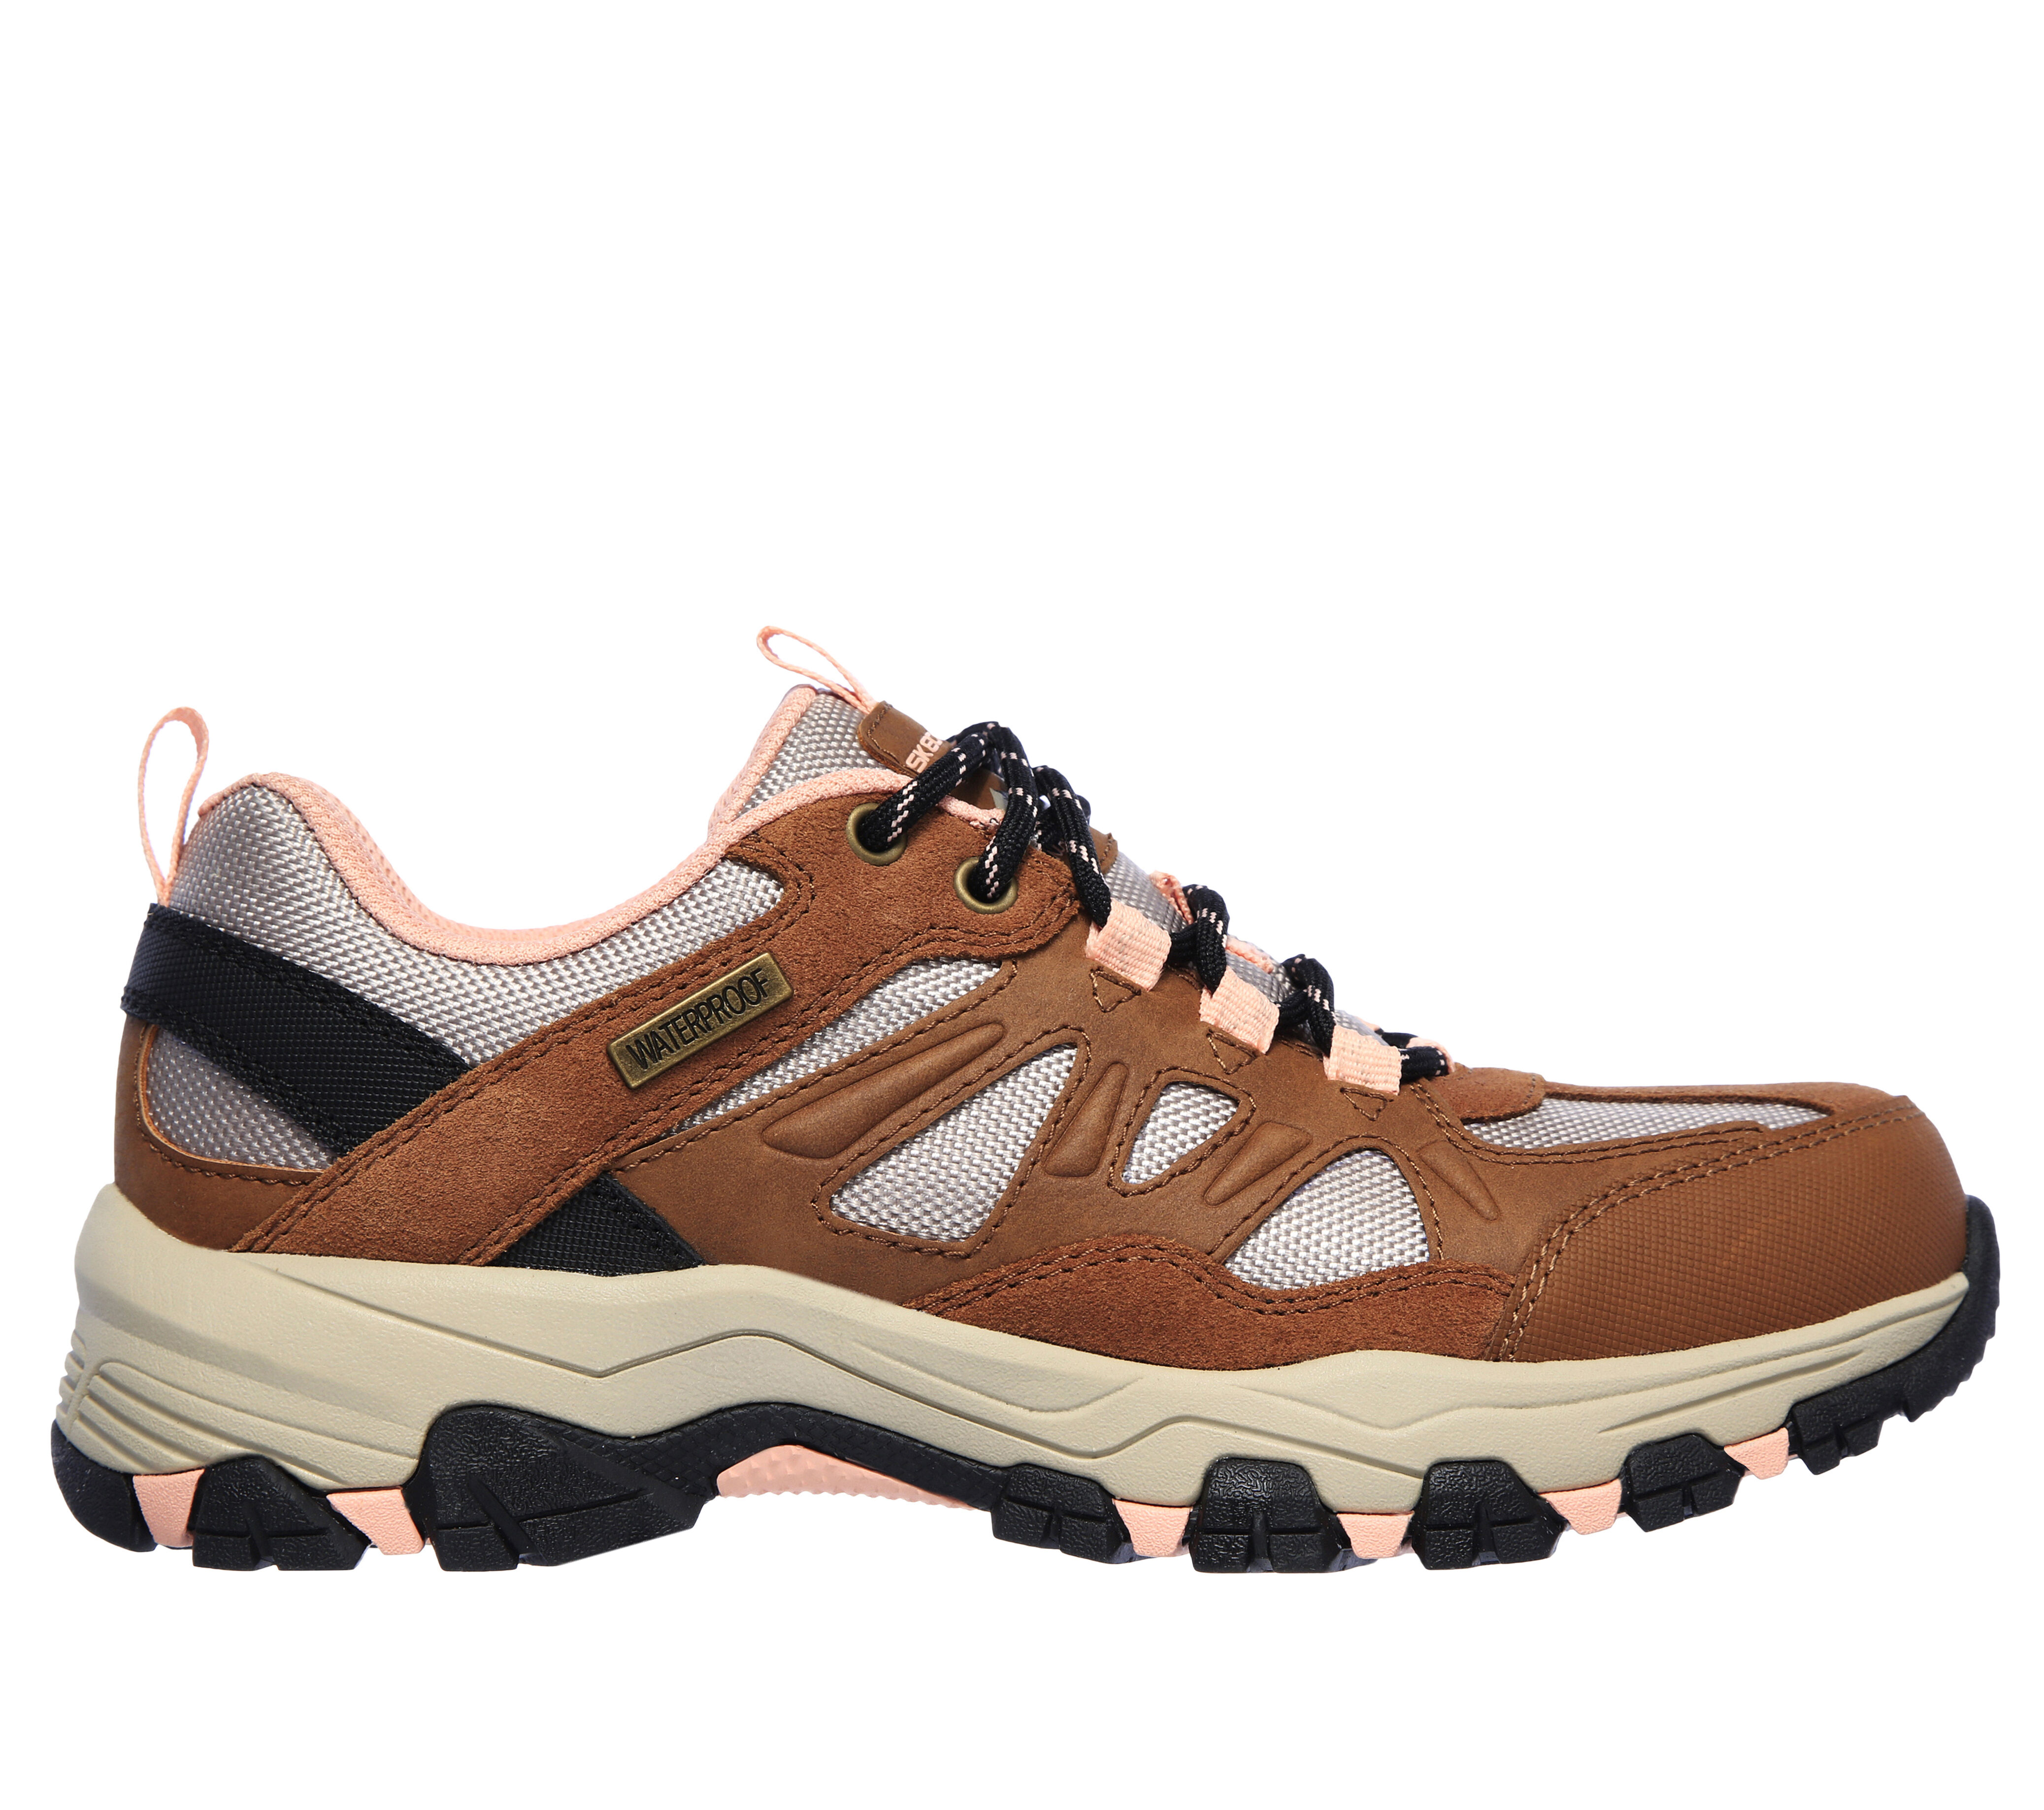 skechers women's hiking shoes